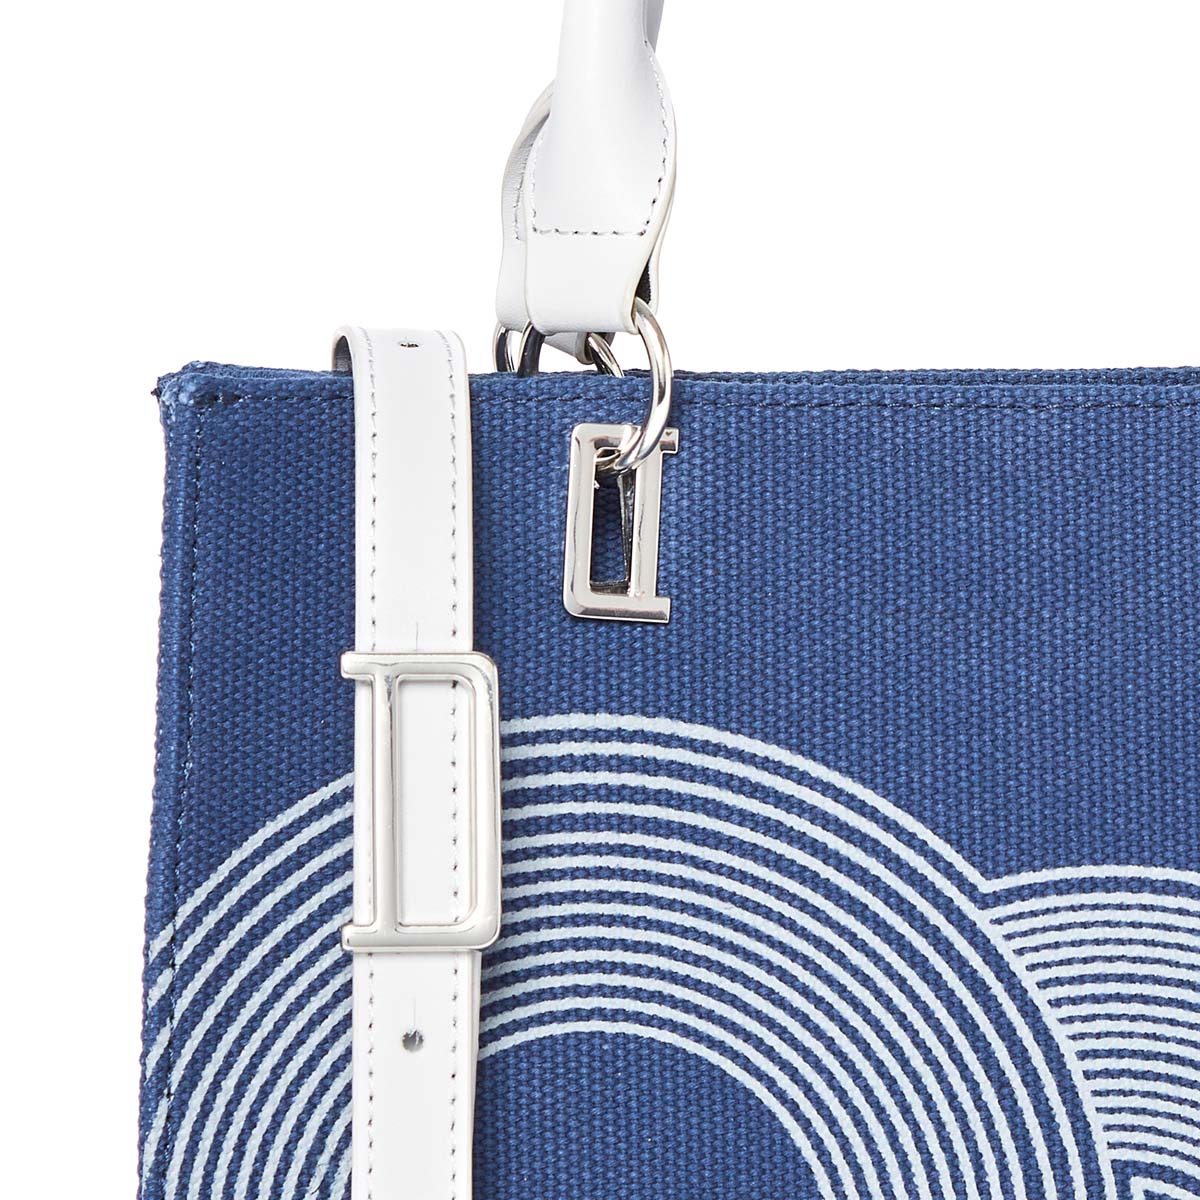 Petit sac cabas - Bleu - Femme - Fermeture à pont zippé